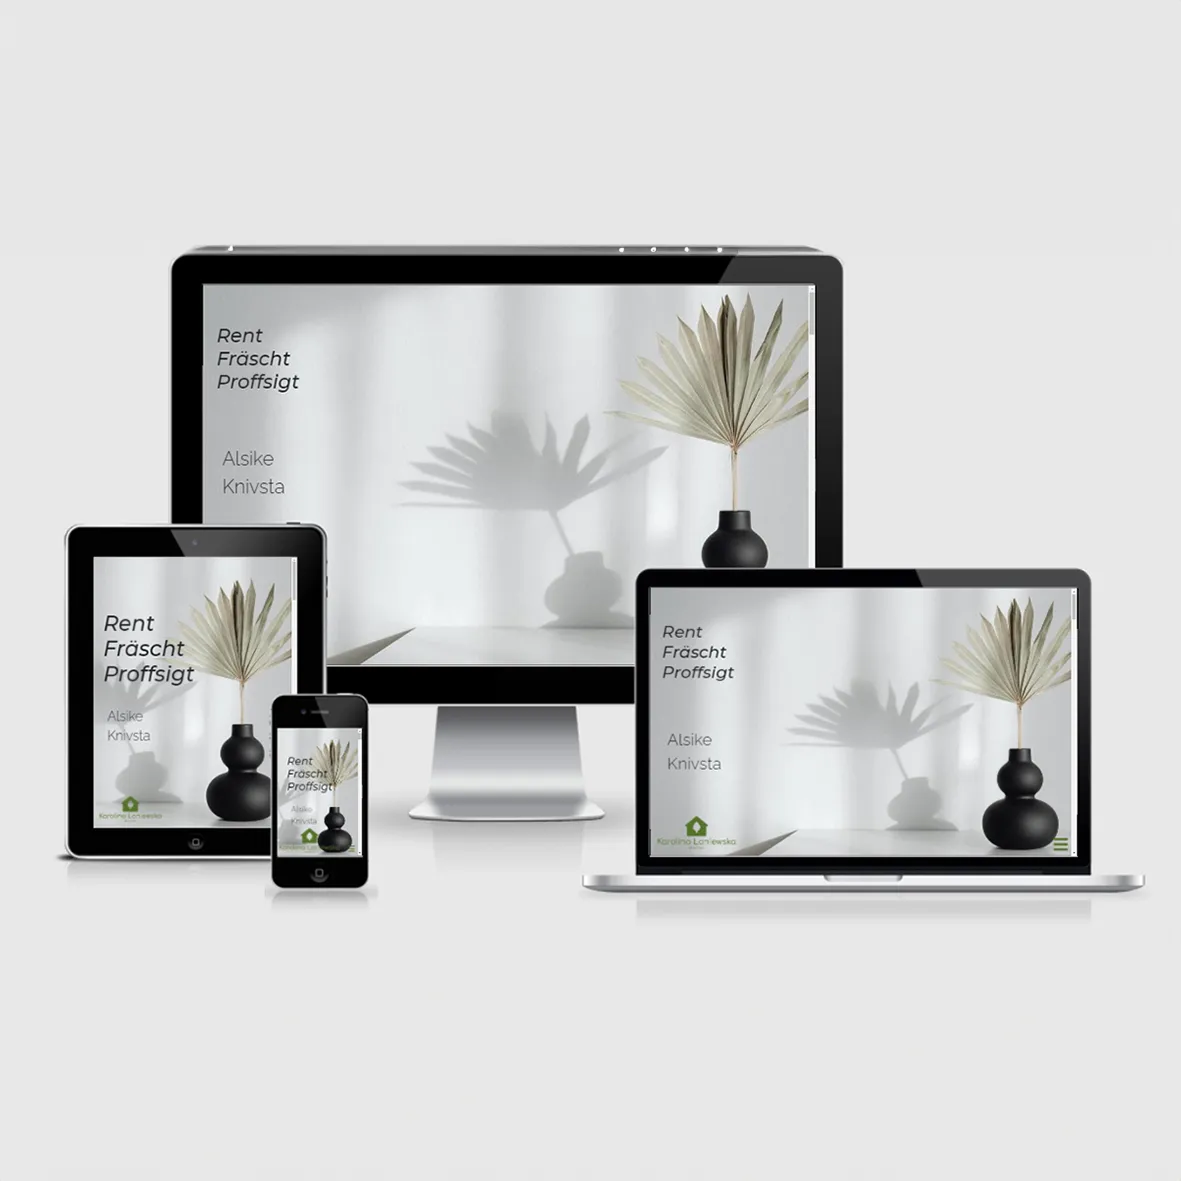 Blue Bliss - Grafisk Design och Webbdesign i Sörmland. Kreativa lösningar för logotyper, affischer, responsiva webbplatser och filmpropgrafik. Utforska vår konstnärliga värld!